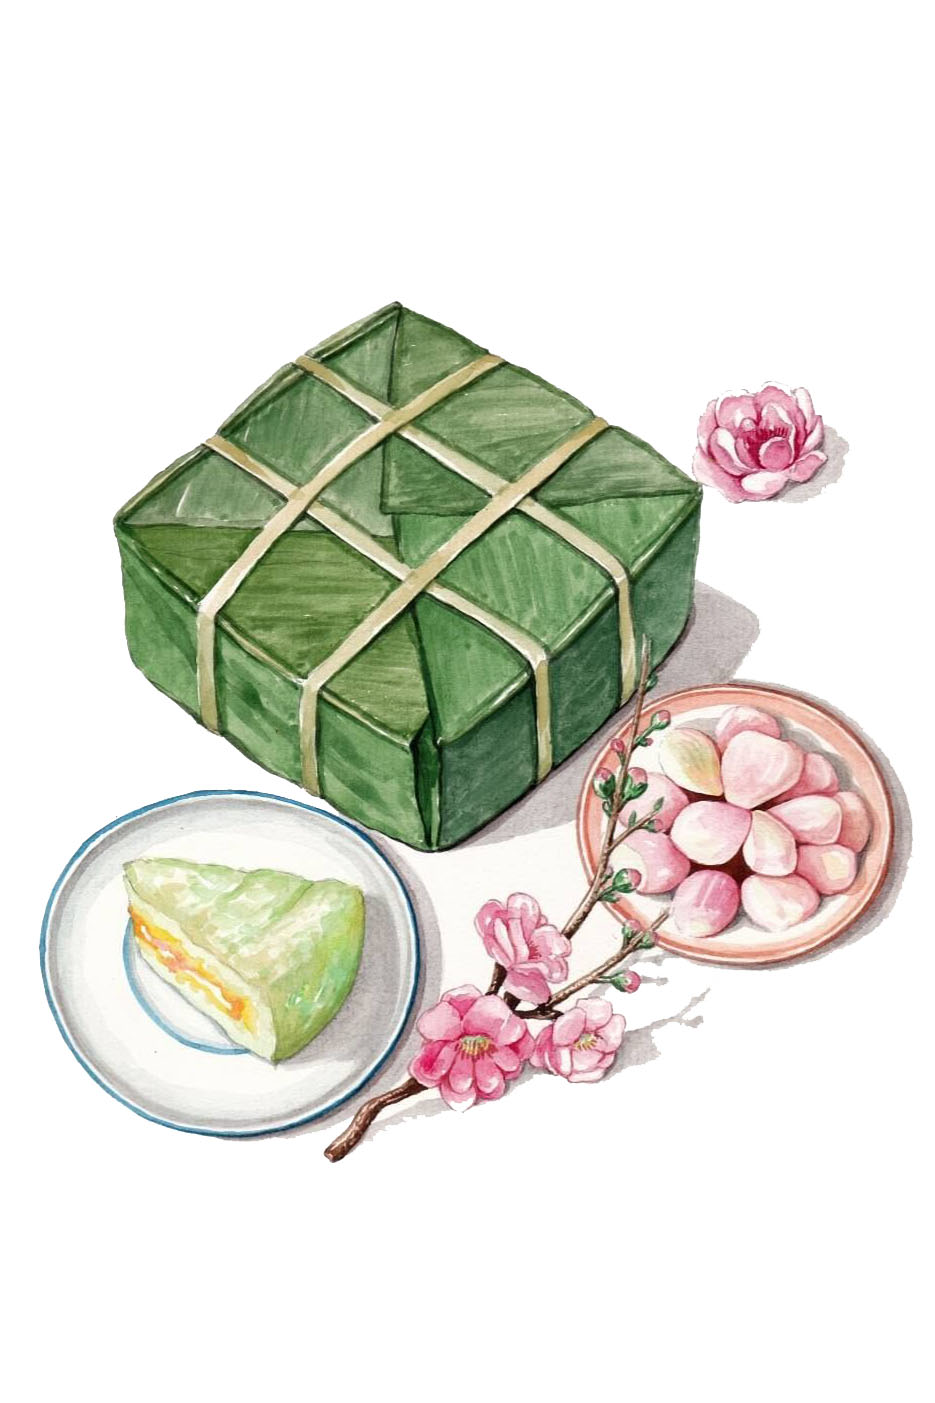 Đắm chìm trong hình ảnh bánh chưng đầy tinh túy và nét đẹp truyền thống của người Việt Nam. Với màu sắc hài hòa, chất liệu tỉ mỉ cùng bản sắc văn hóa sâu sắc, bạn sẽ thấy được sự độc đáo và tinh tế của món bánh này.